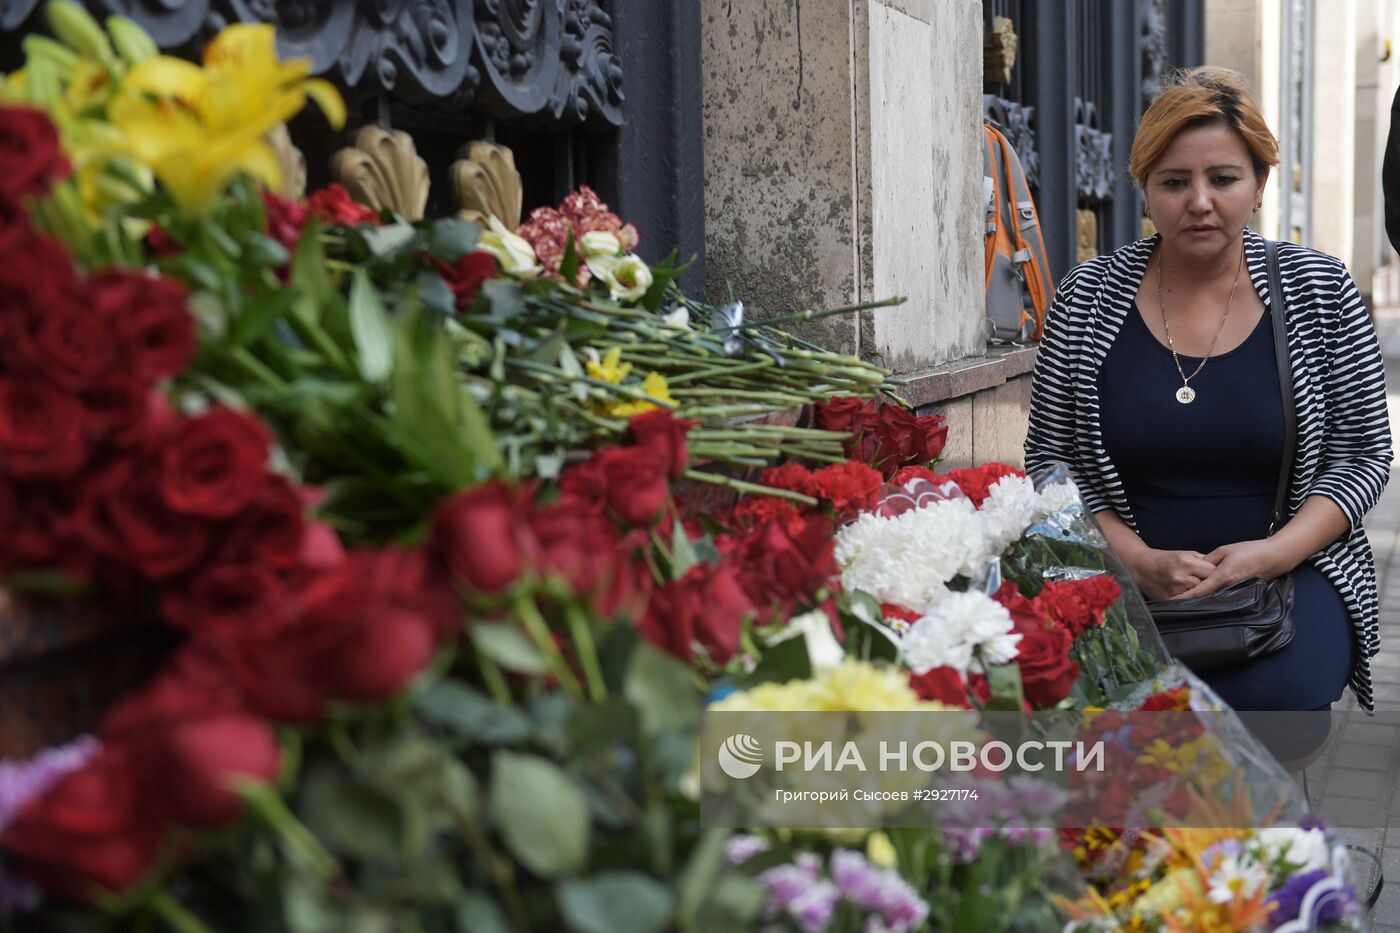 Цветы у посольства Узбекистана в Москве, в связи с кончиной президента республики Ислама Каримова